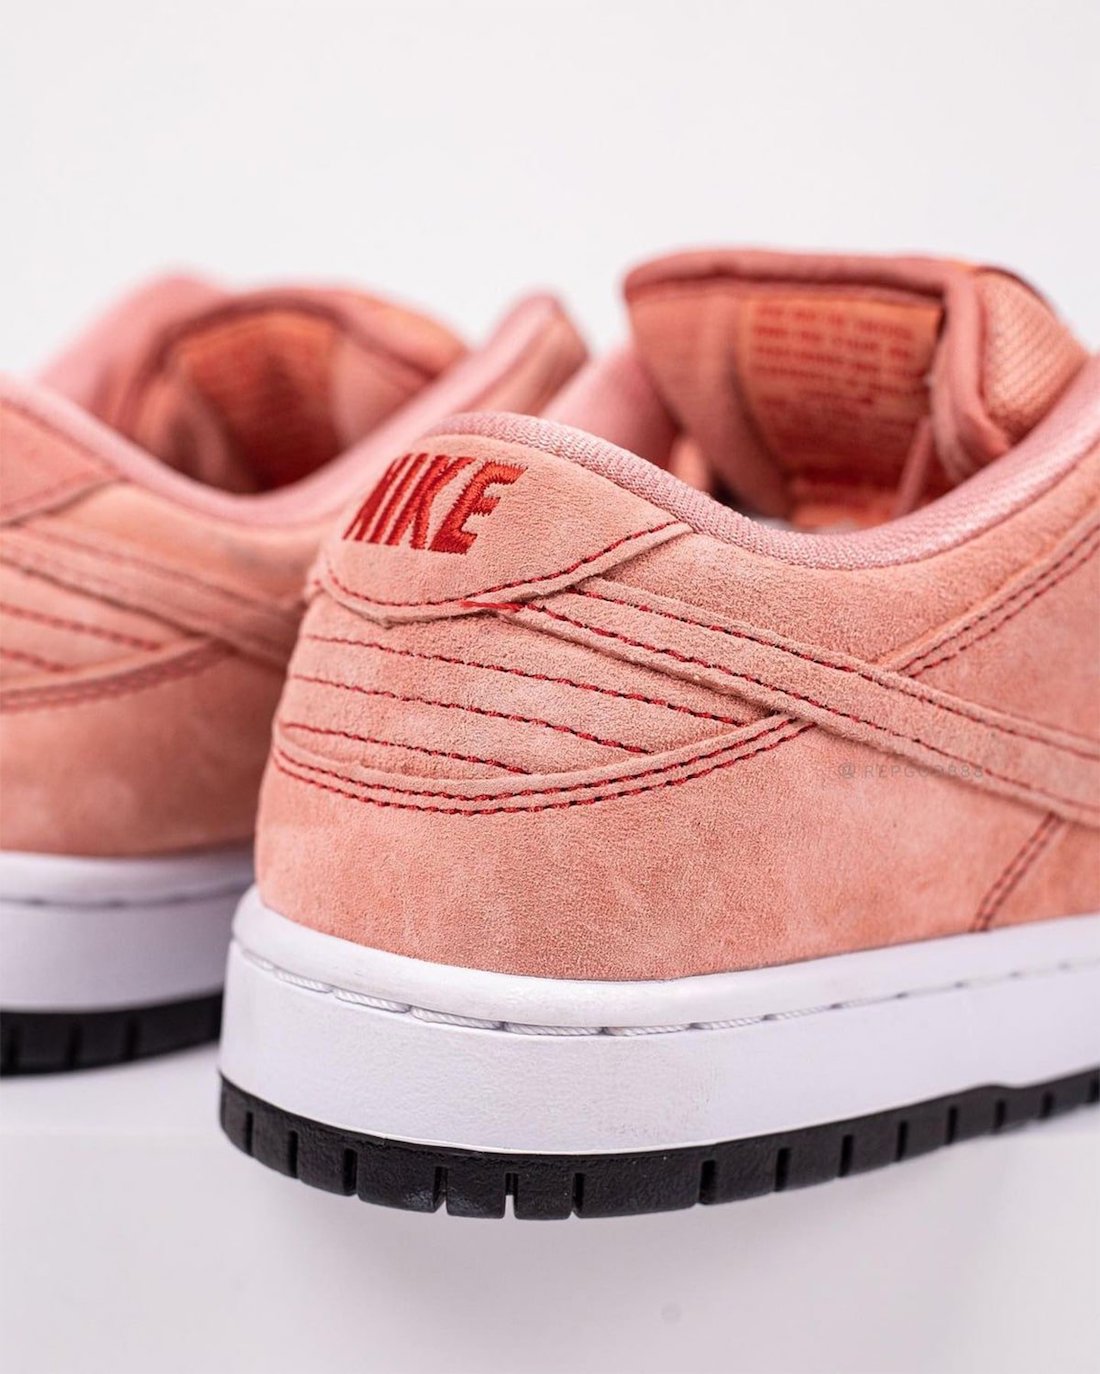 Pink Pig Nike SB Dunk Low Atomic Pink CV1655-600 Release Info